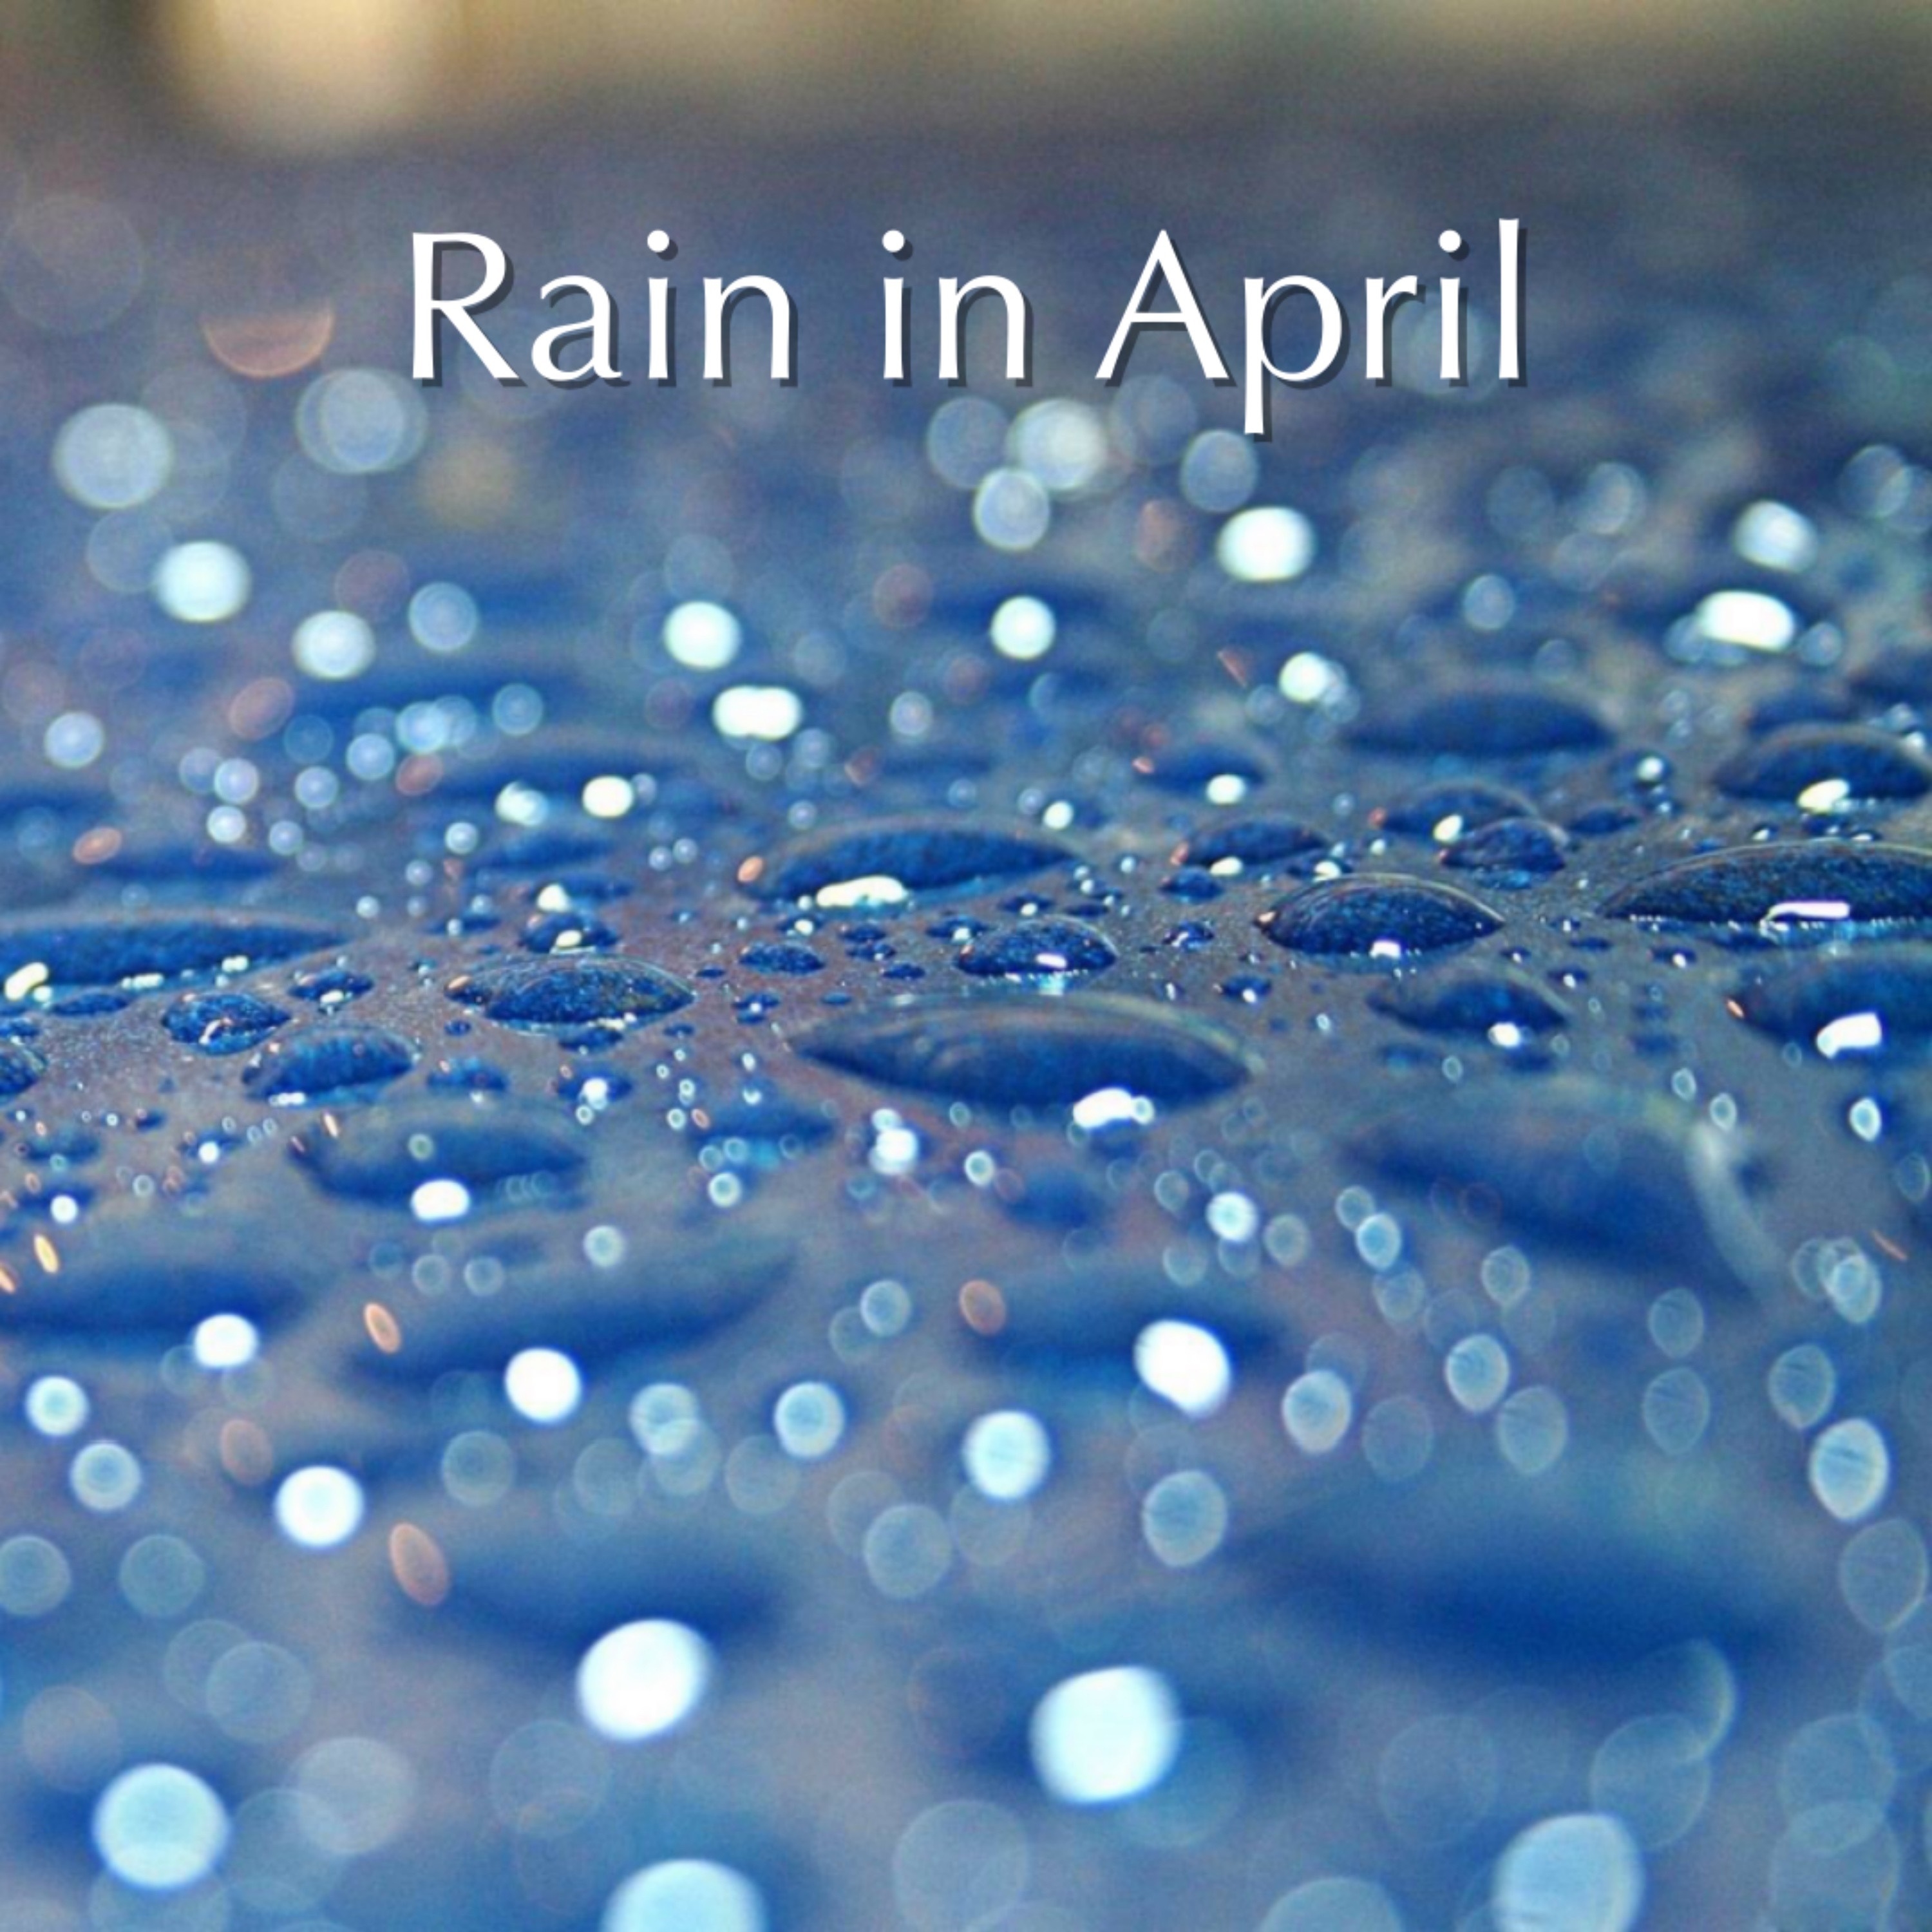 Rain in April